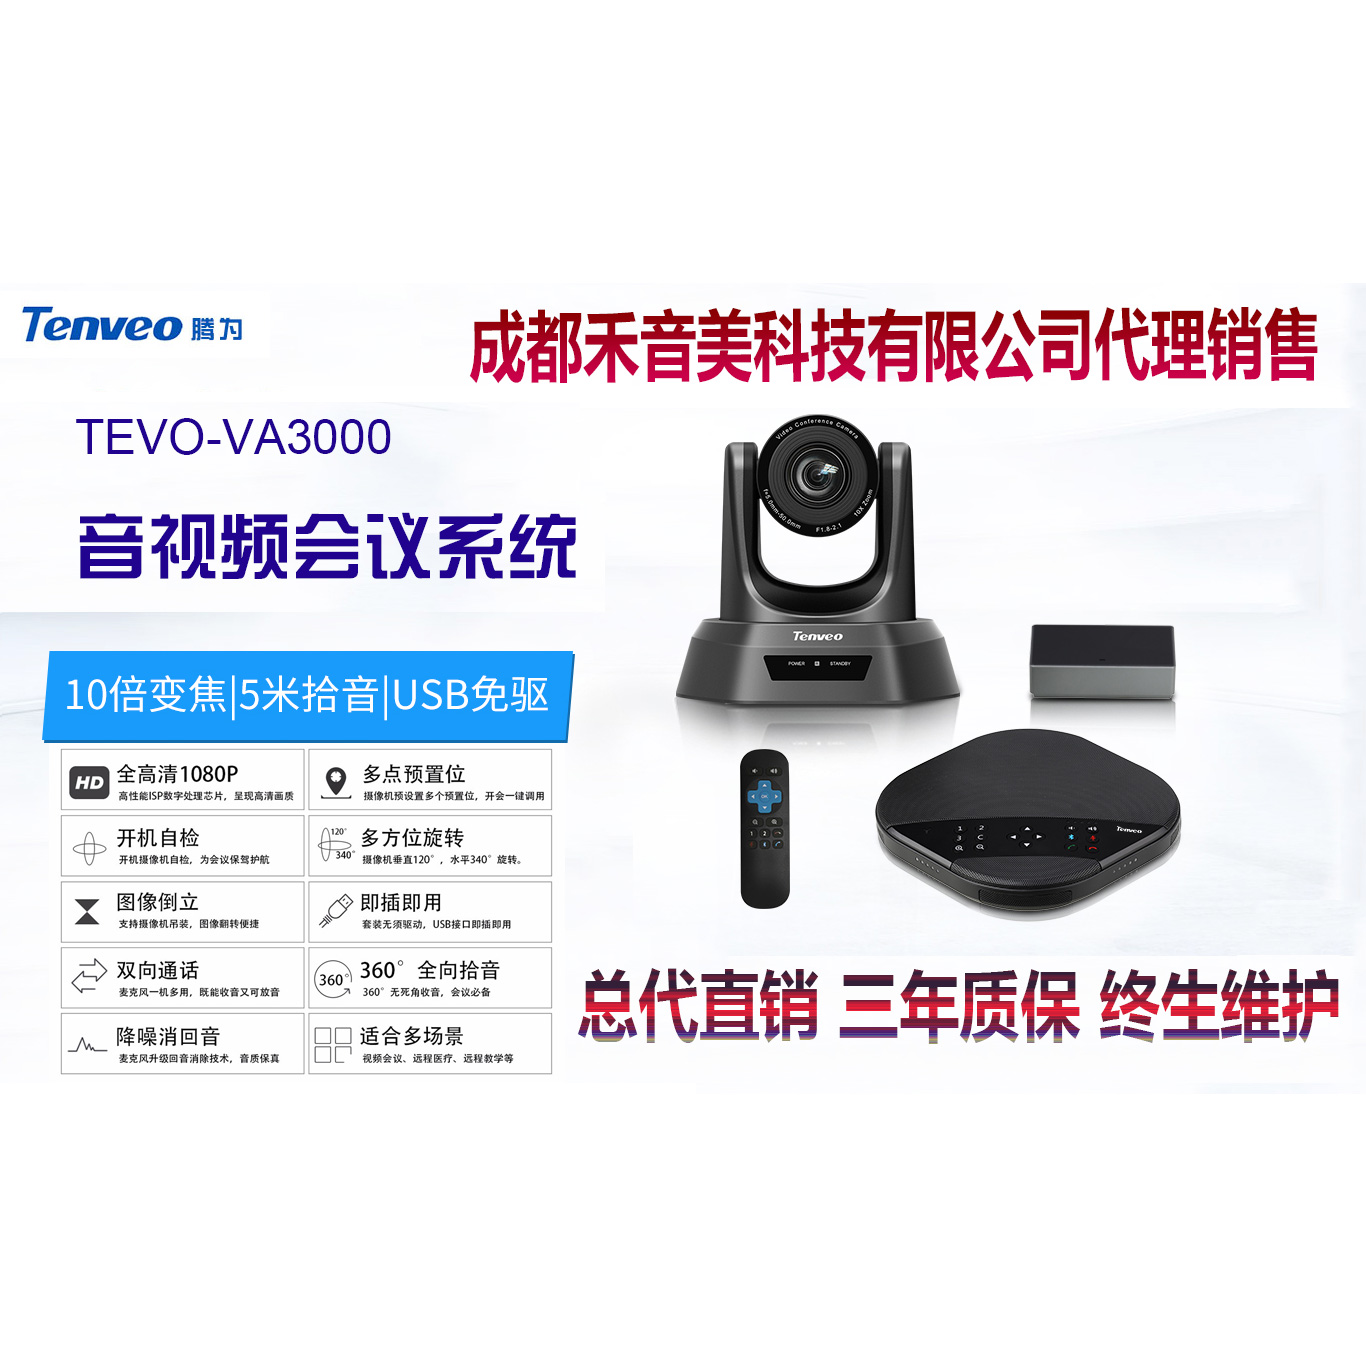 成都 腾为 Tenveo 视频会议全向麦克风视频会议摄像机代理销售安装调试维修